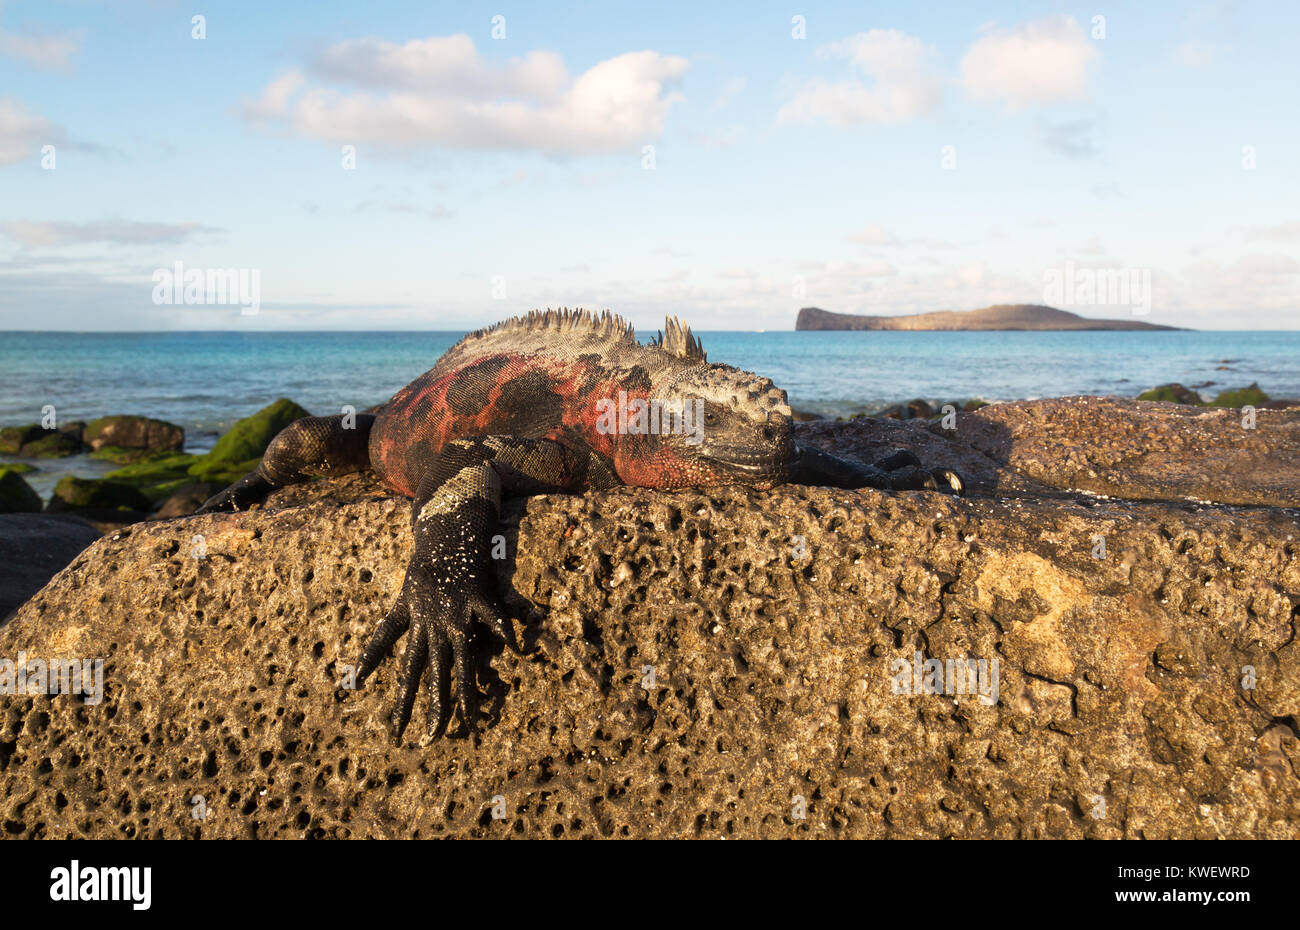 Marine iguana (Amblyrhynchus cristatus), männlich in passenden Farben auf einem Felsen, Santa Cruz Island, Galapagos, Ecuador Südamerika Stockfoto